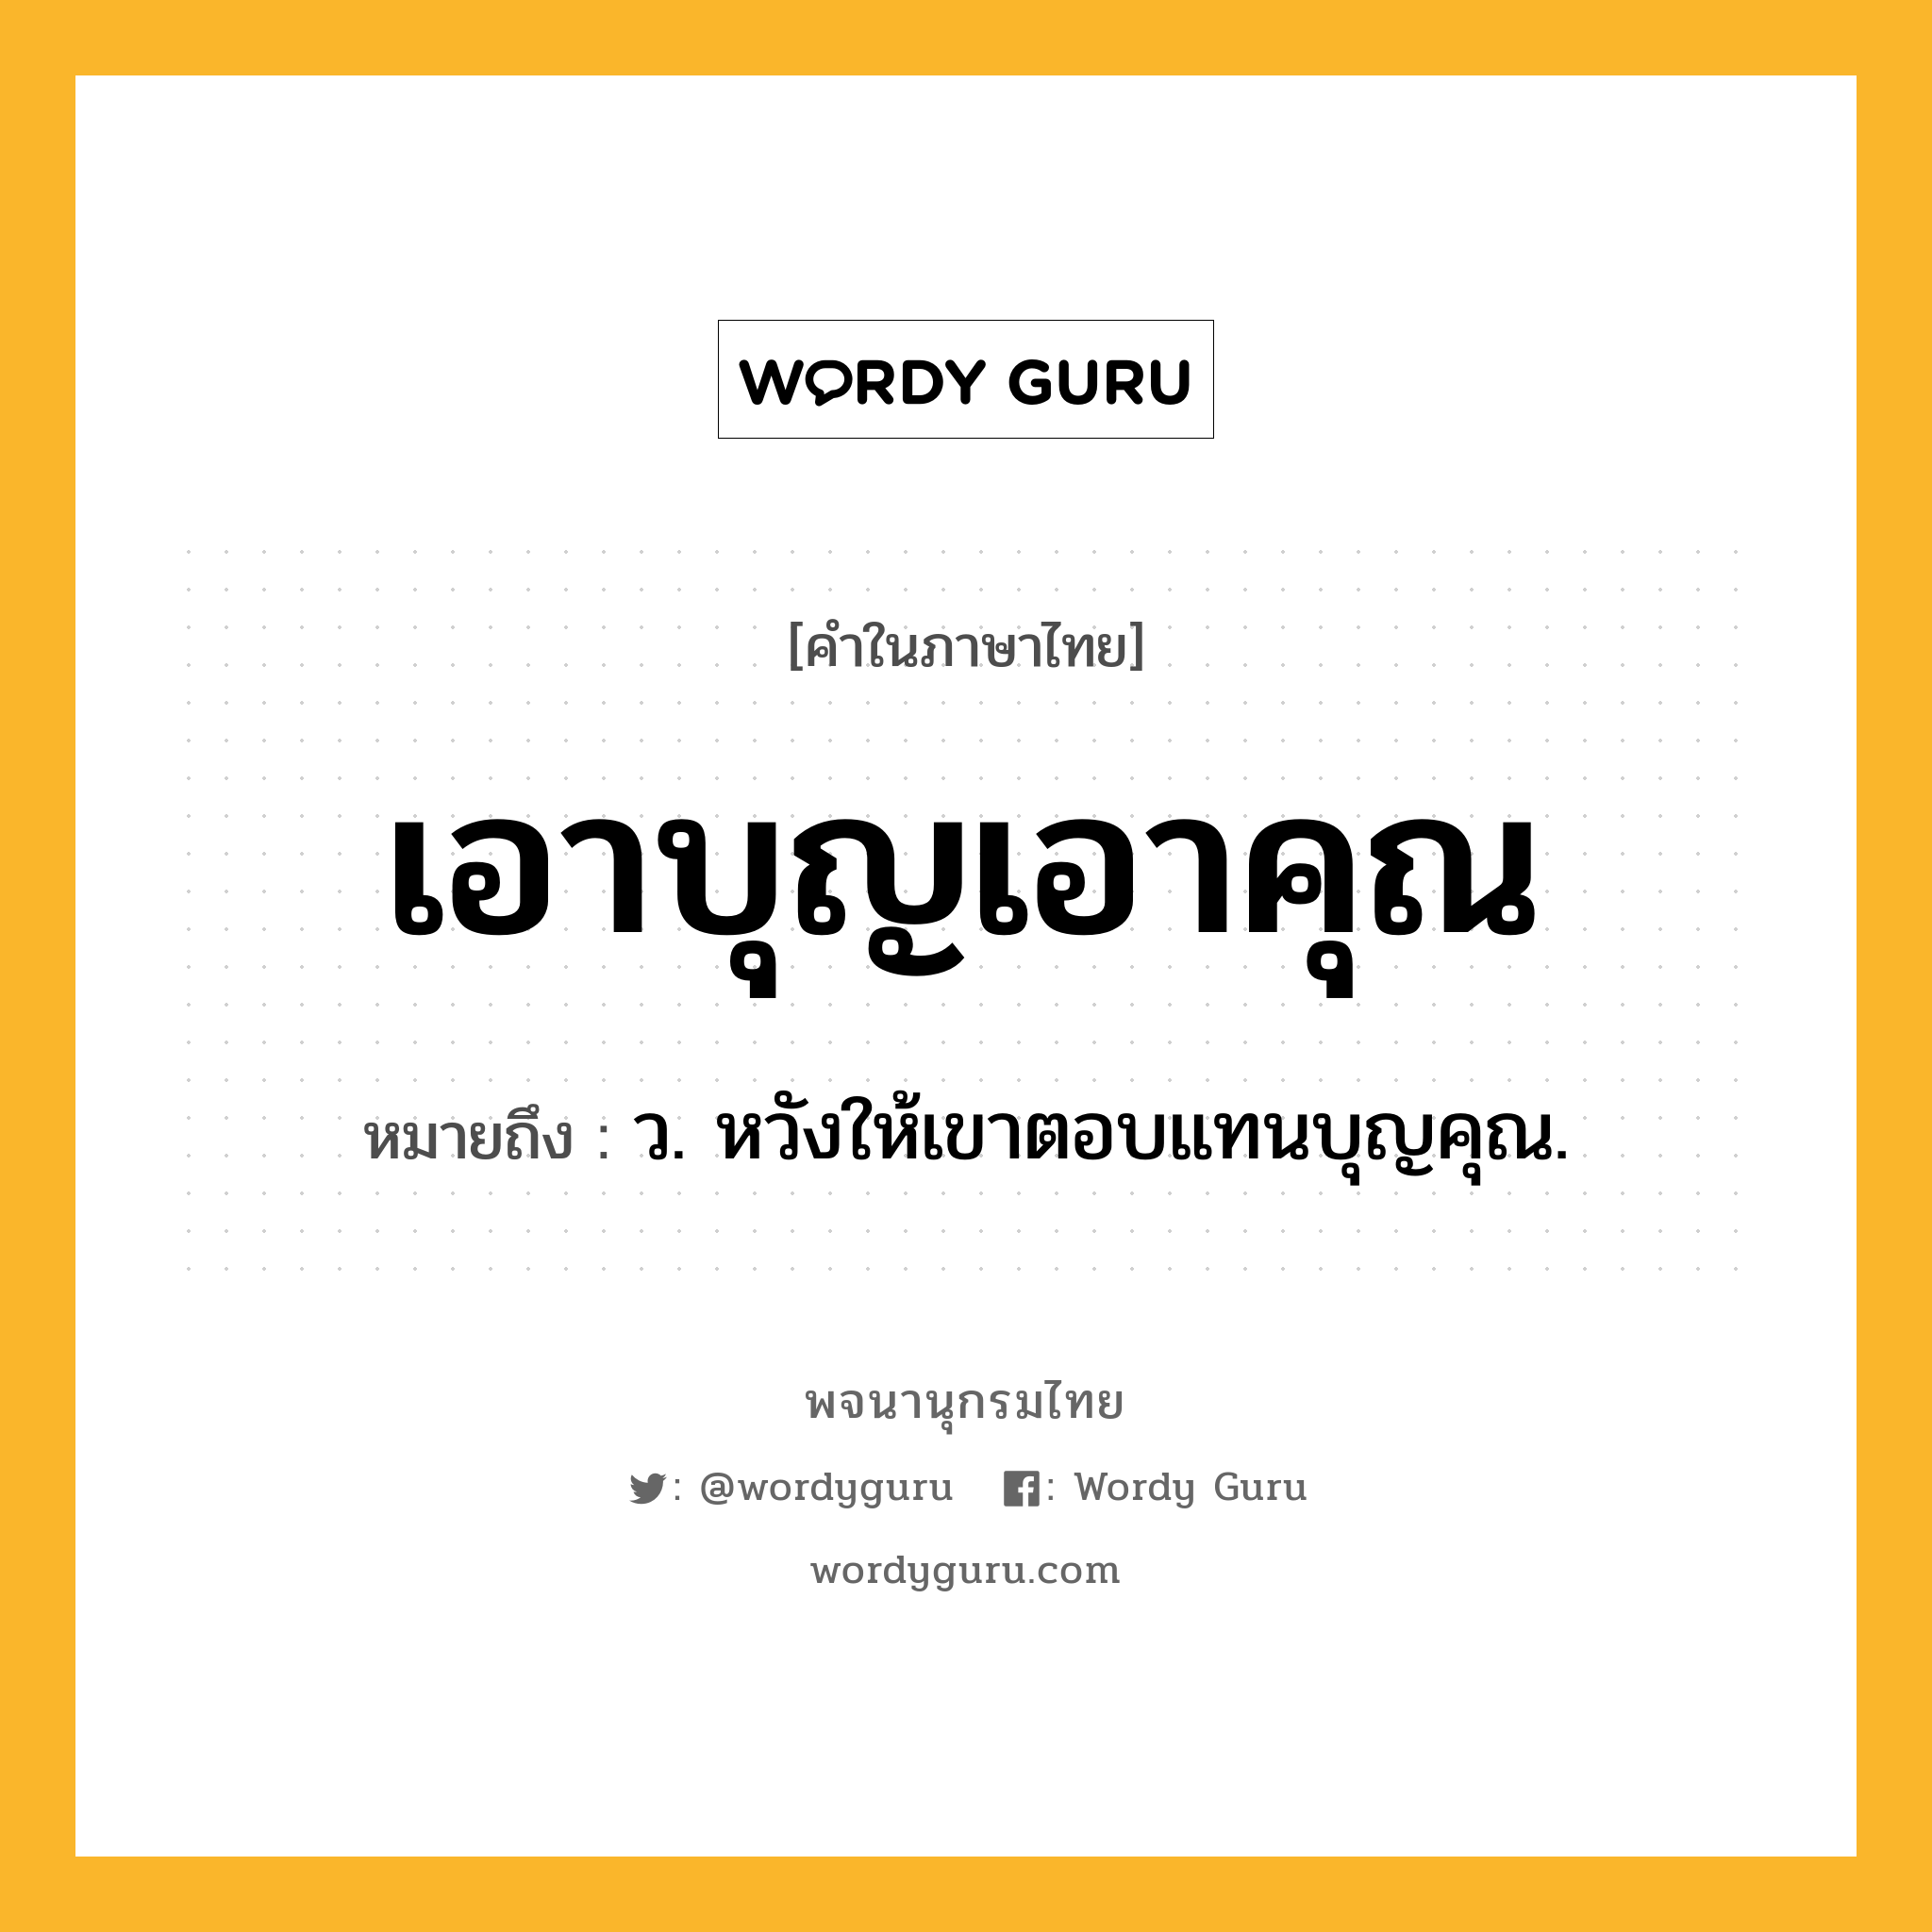 เอาบุญเอาคุณ ความหมาย หมายถึงอะไร?, คำในภาษาไทย เอาบุญเอาคุณ หมายถึง ว. หวังให้เขาตอบแทนบุญคุณ.